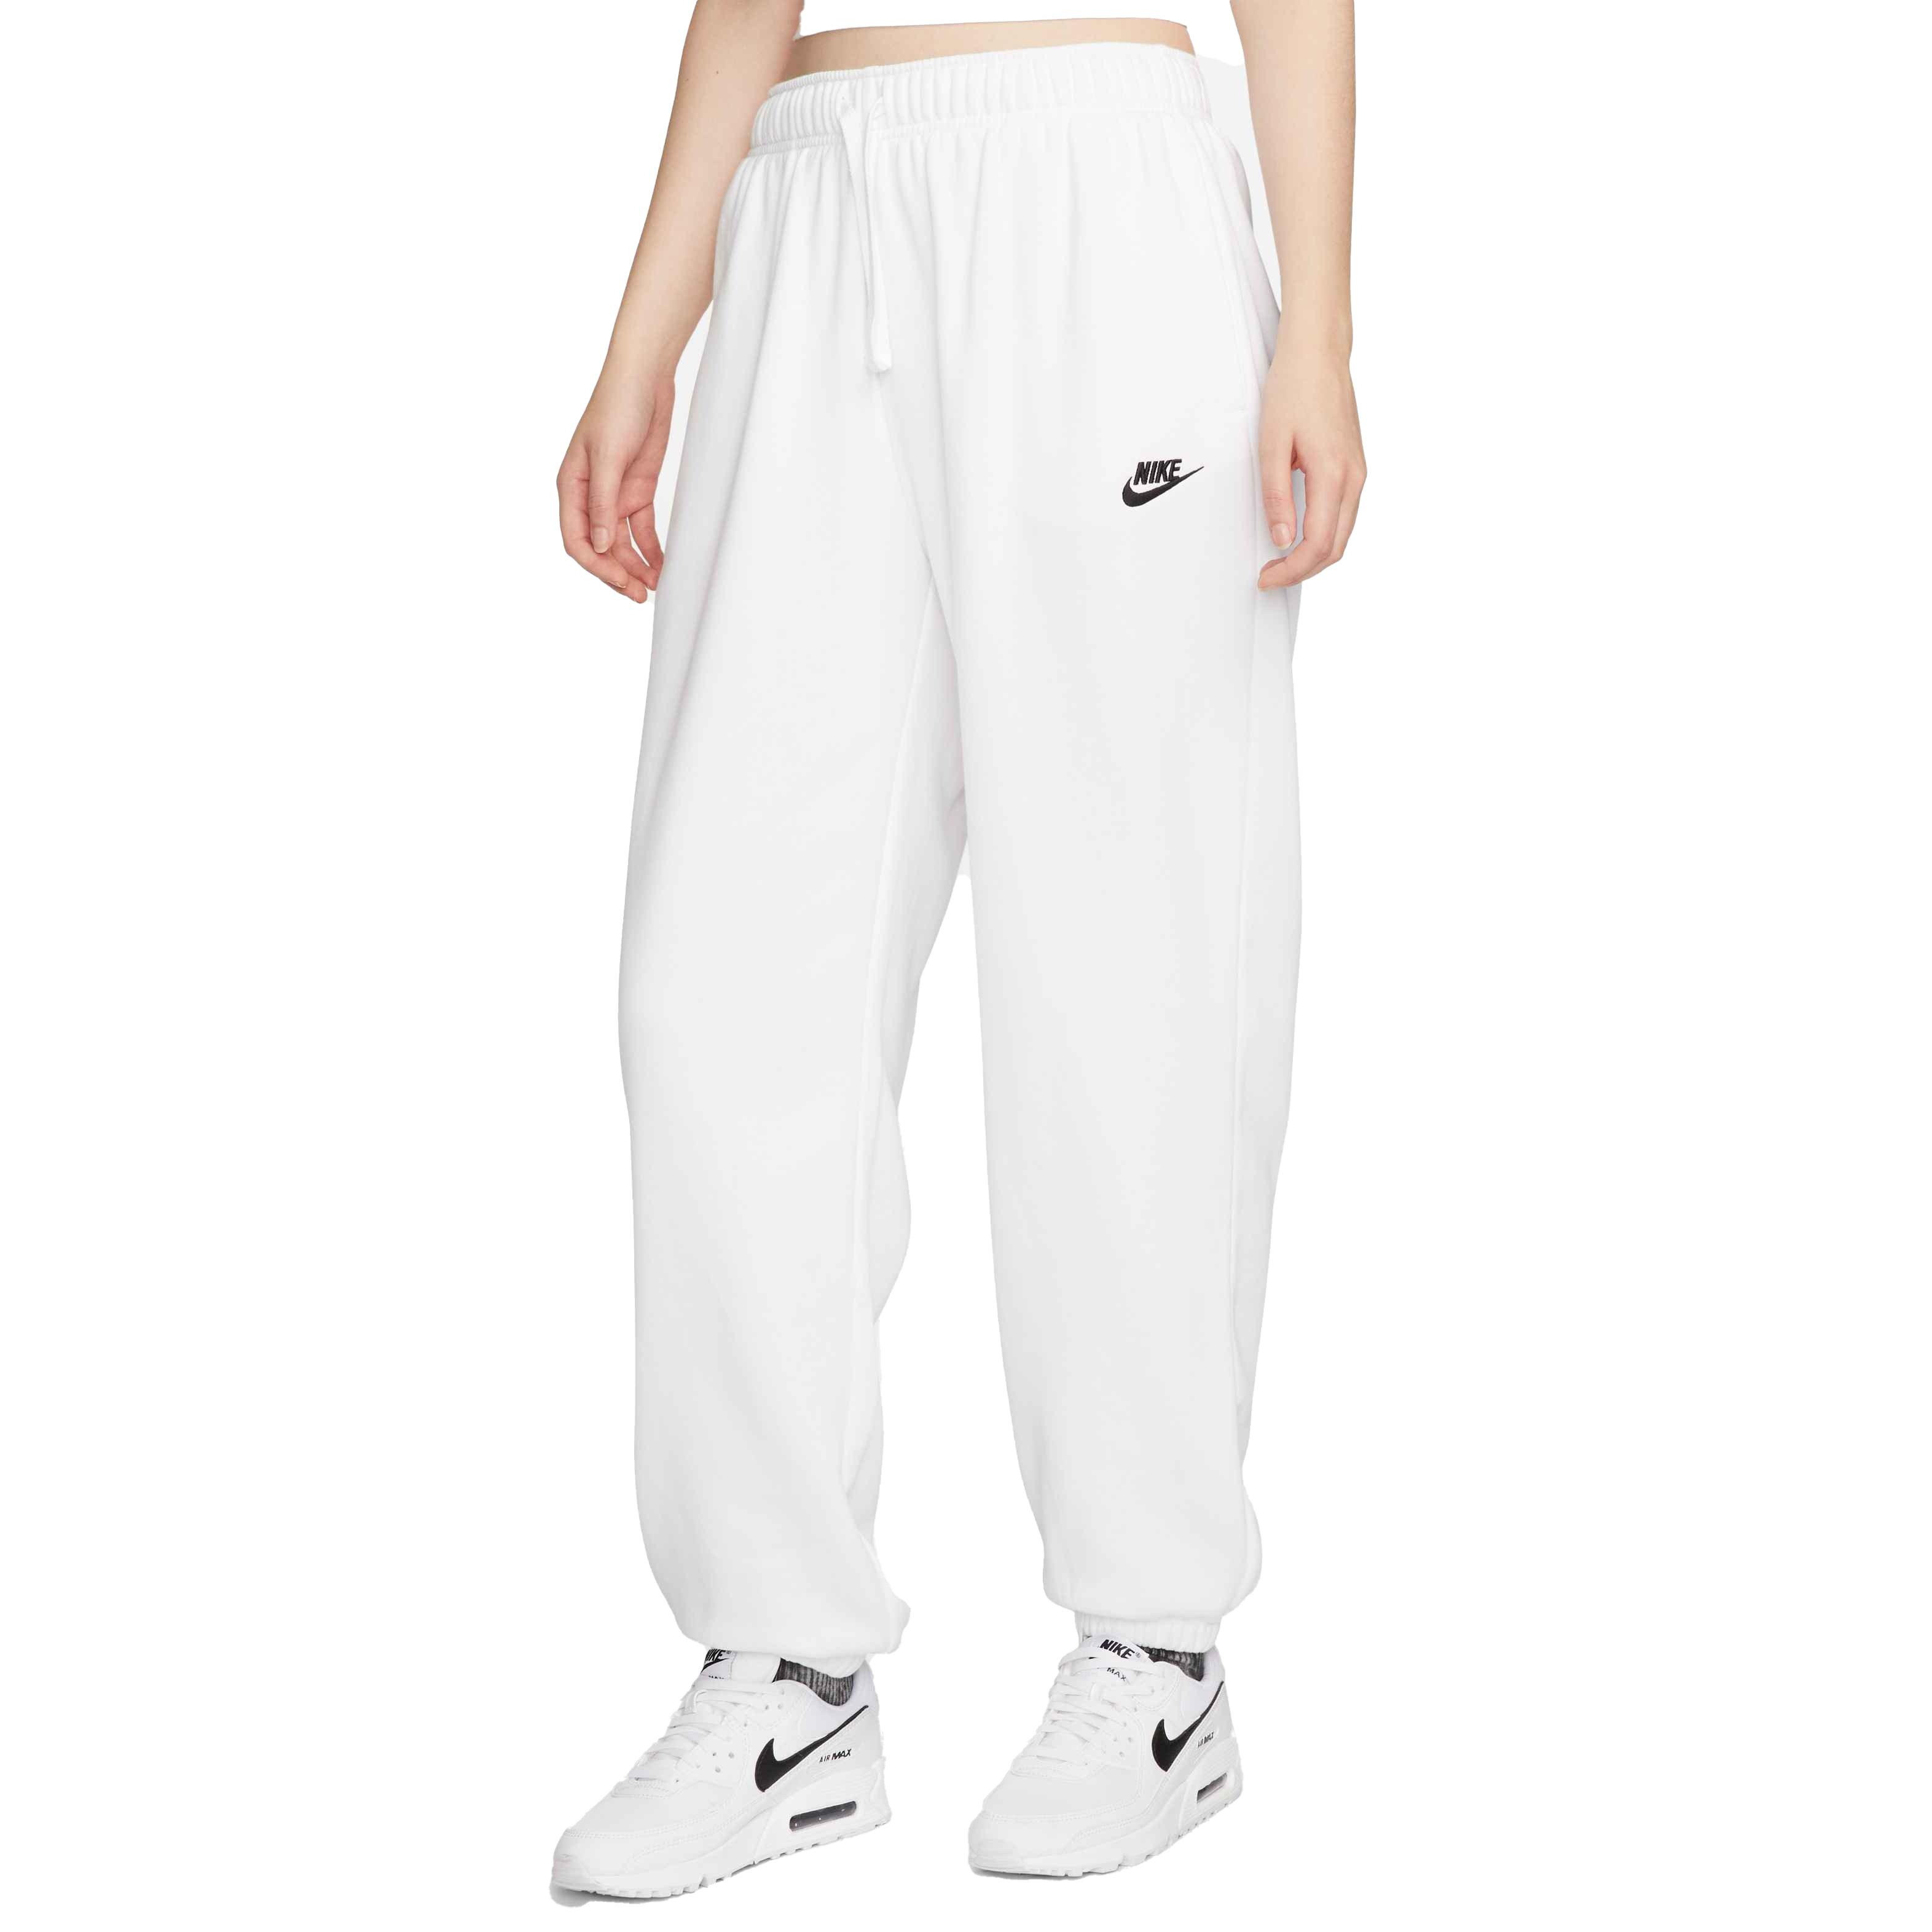 Women's trousers Nike Sportswear Club Fleece Pant - med soft pink/white, Tennis Zone